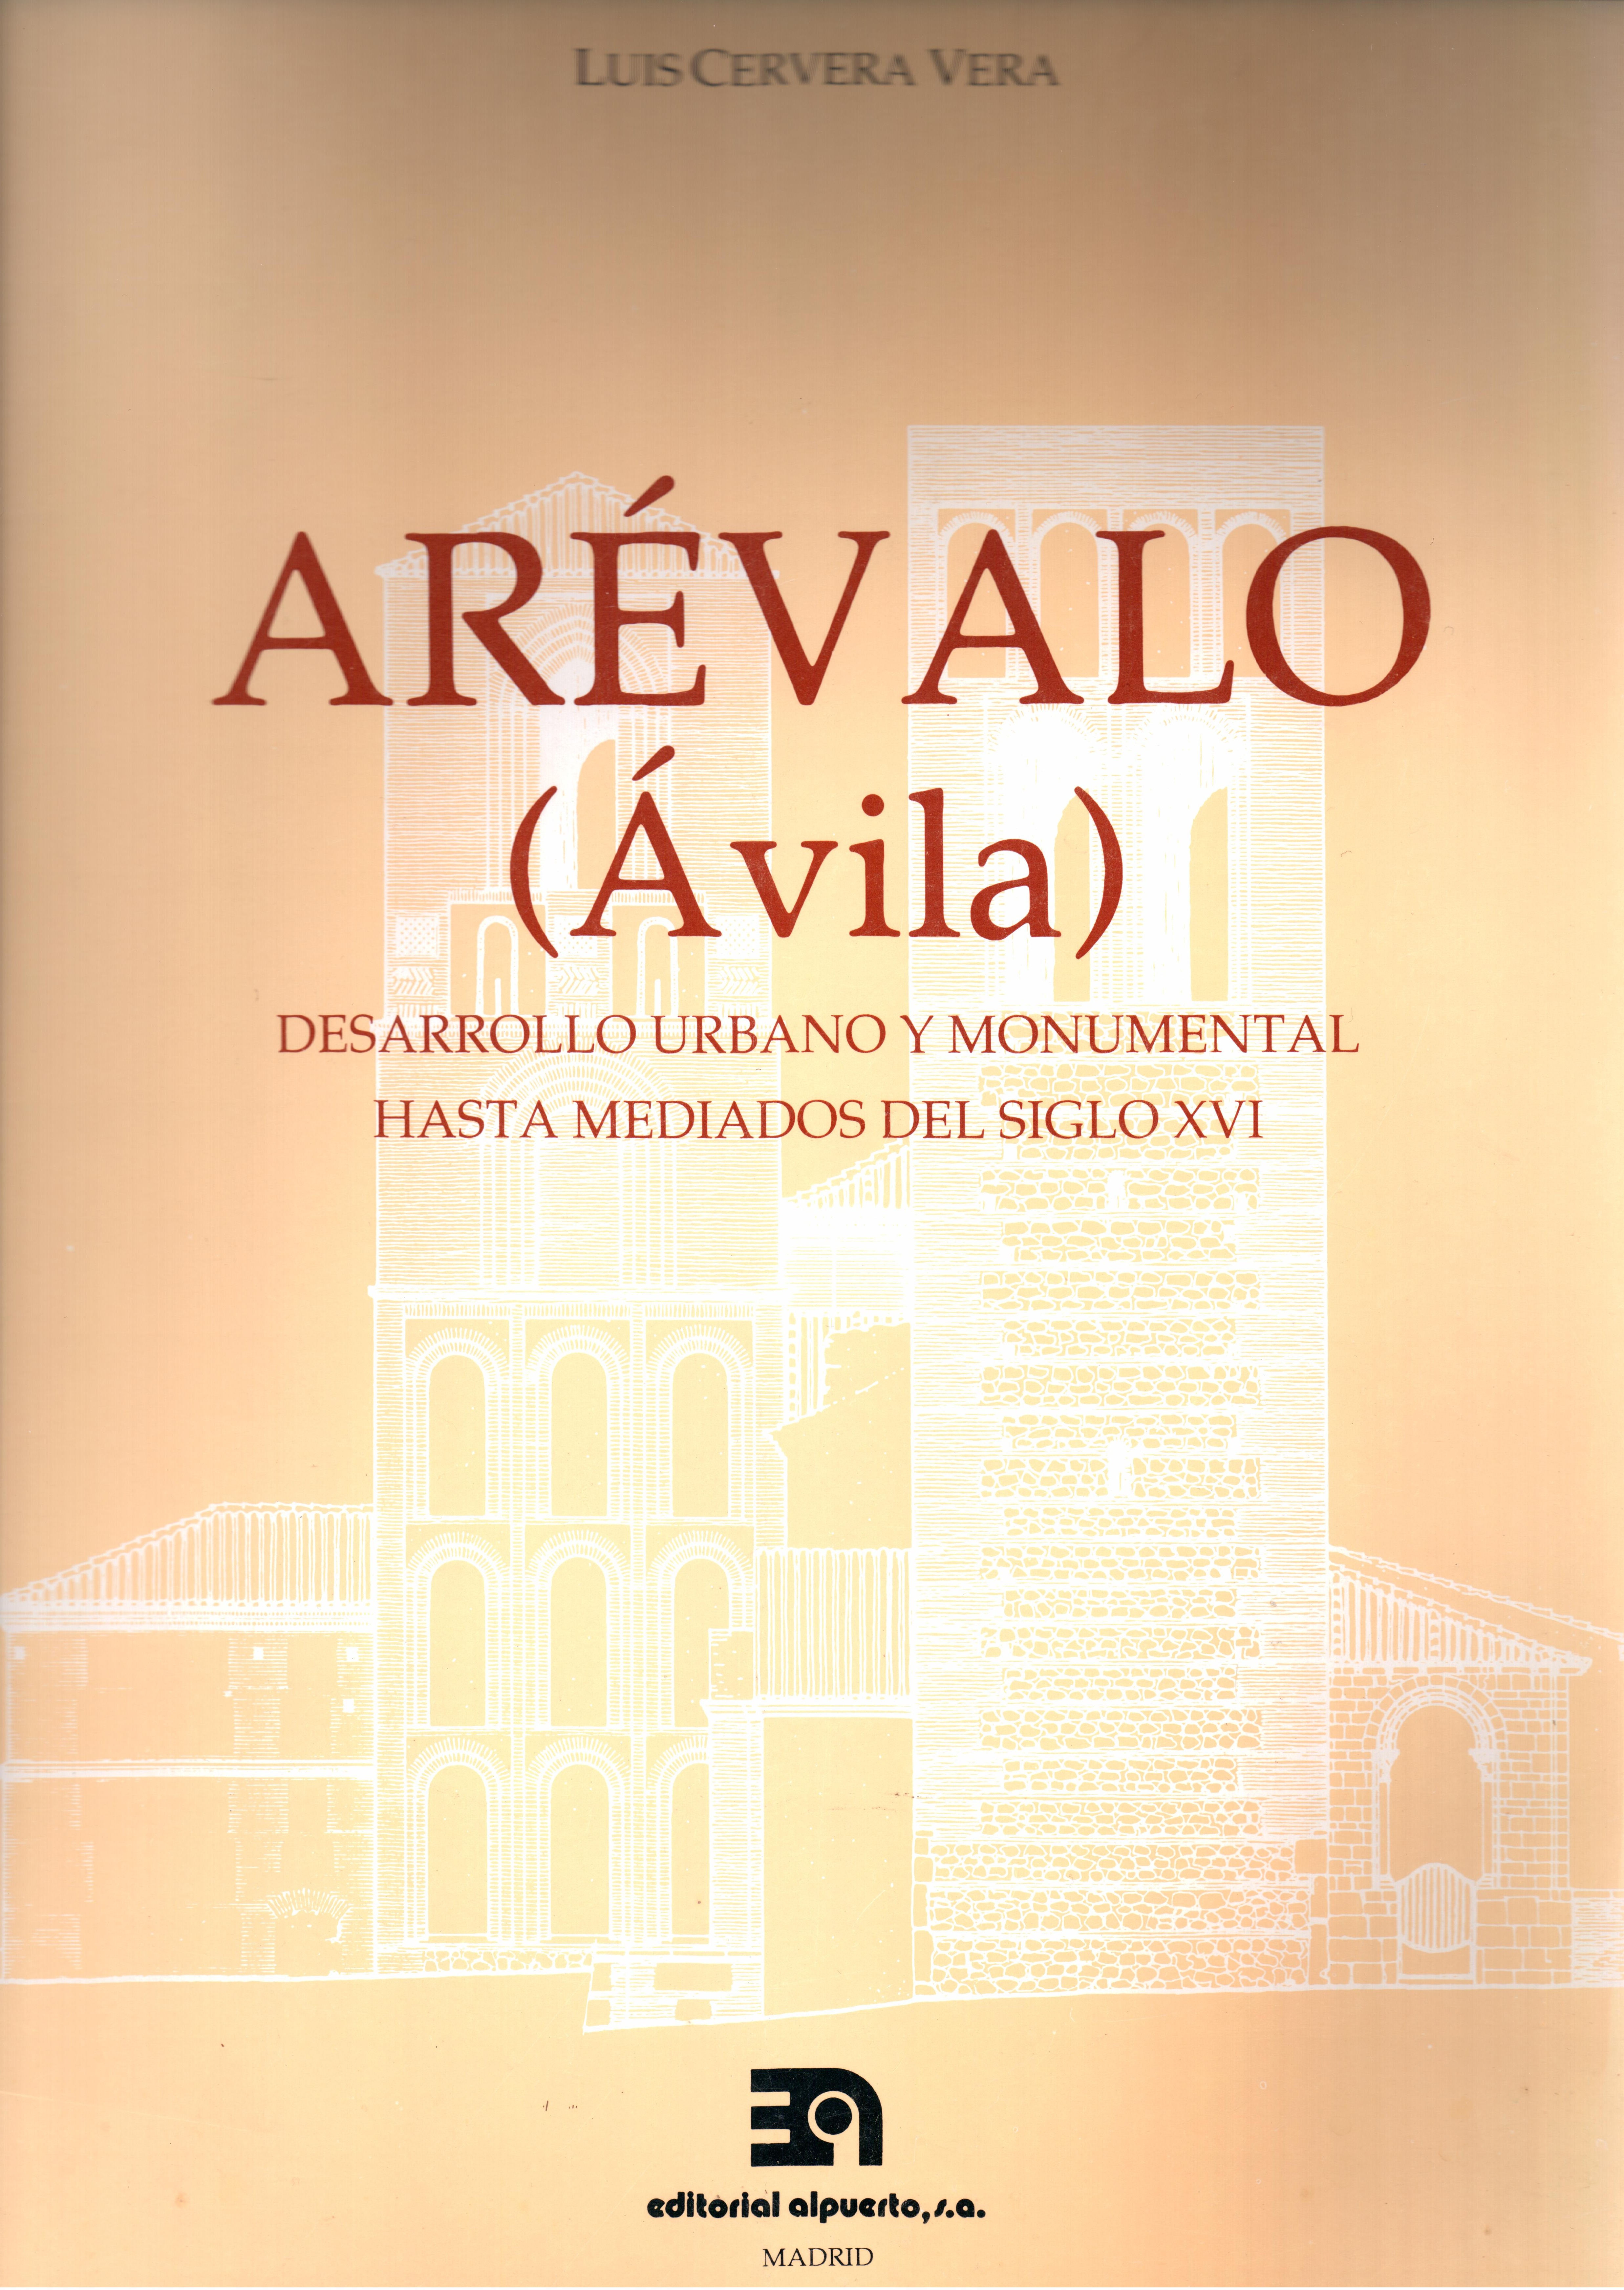 Arévalo (Ávila)
Desarrollo urbano y monumental hasta mediados del s. XVI